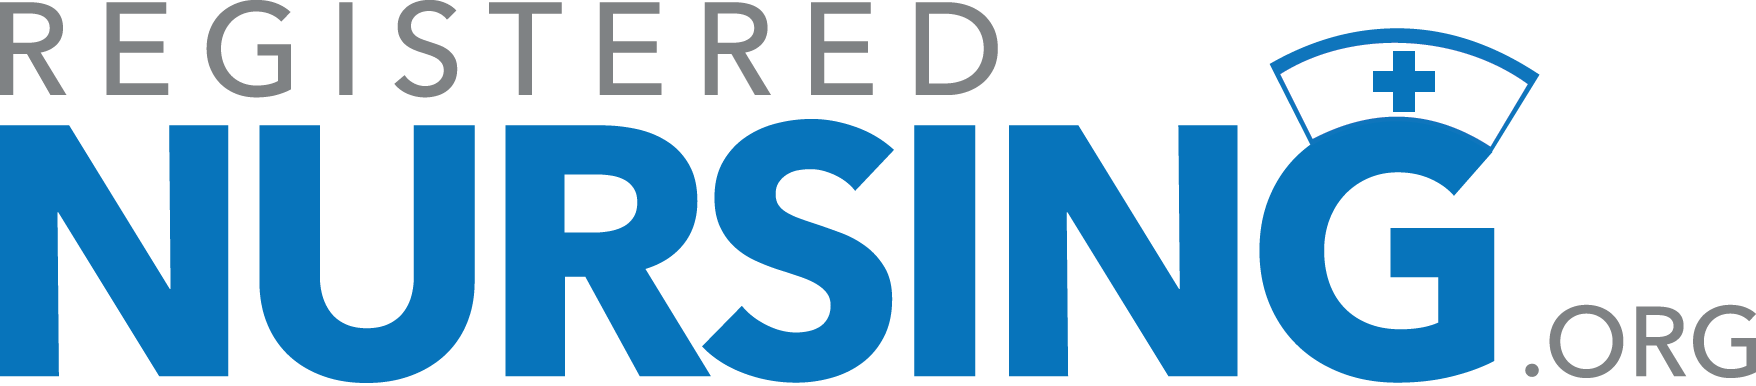 registered nursing org logo